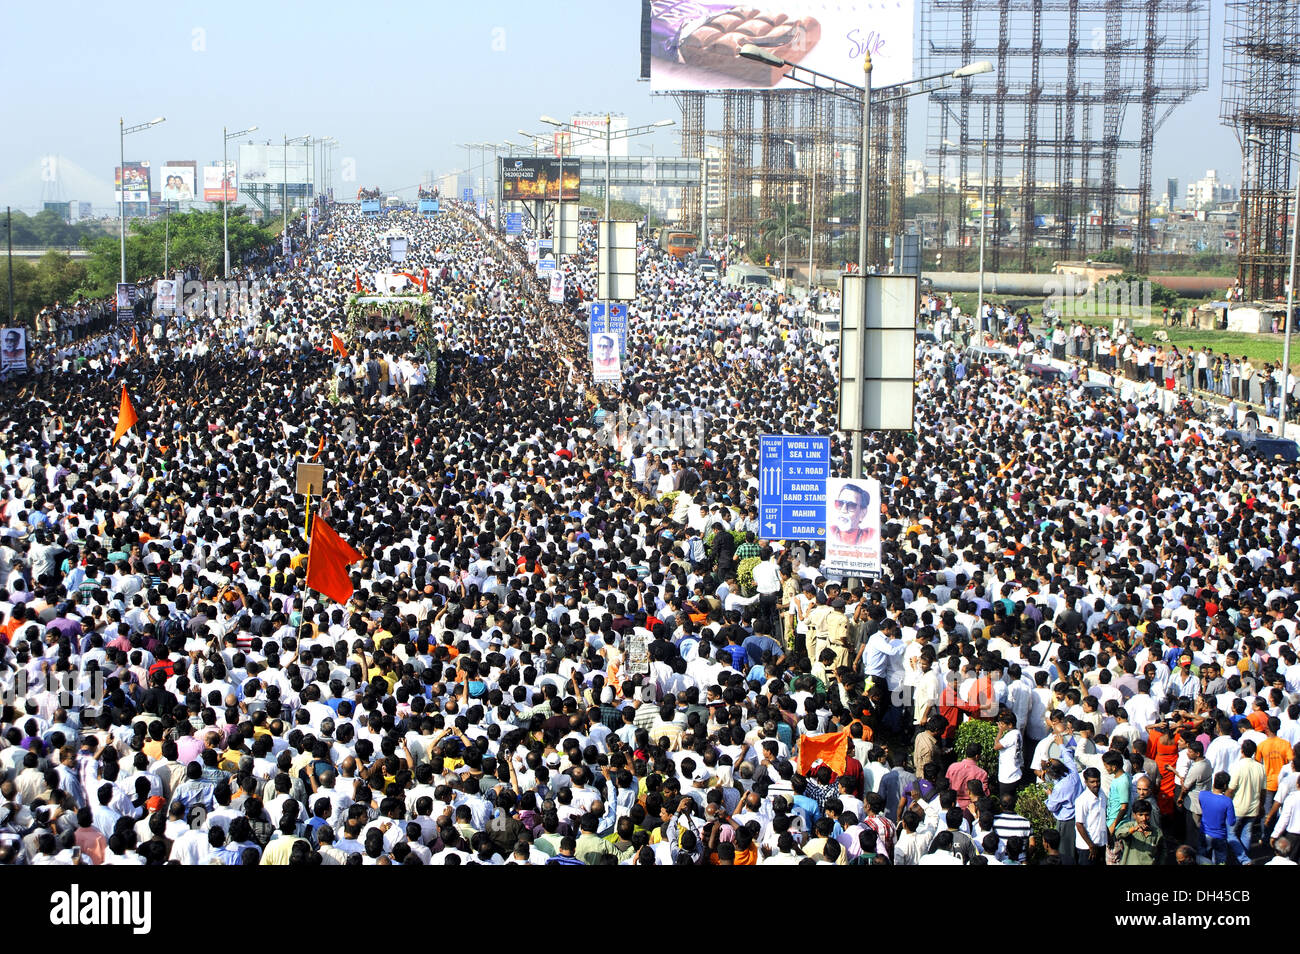 Funeral Procession crowd for Balasaheb Thackeray on Bandra flyover mumbai maharashtra India Stock Photo